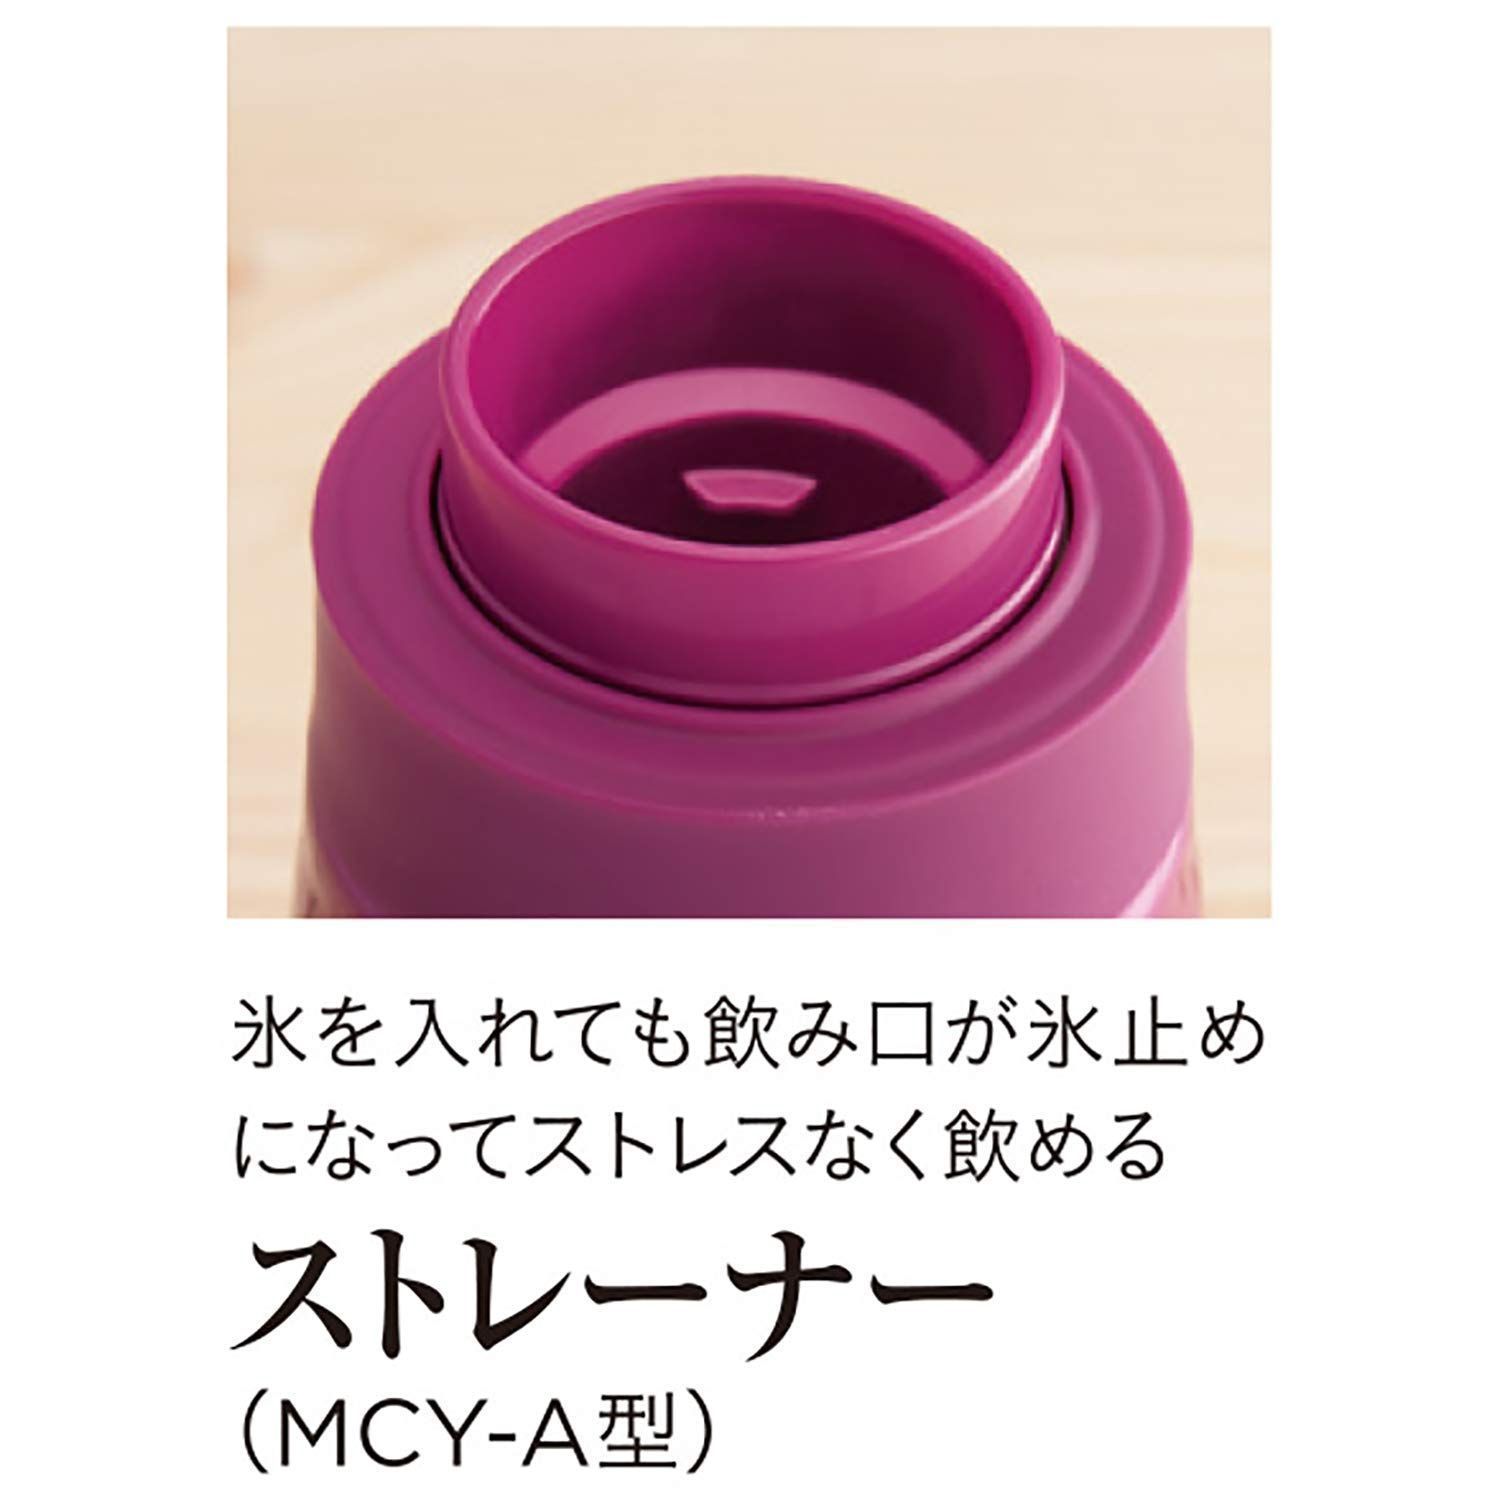 激安/新作 人気MCY-A060KM 600ml モーブブラック マグボトル タイガー魔法瓶 4996.46円 キッチン/食器 